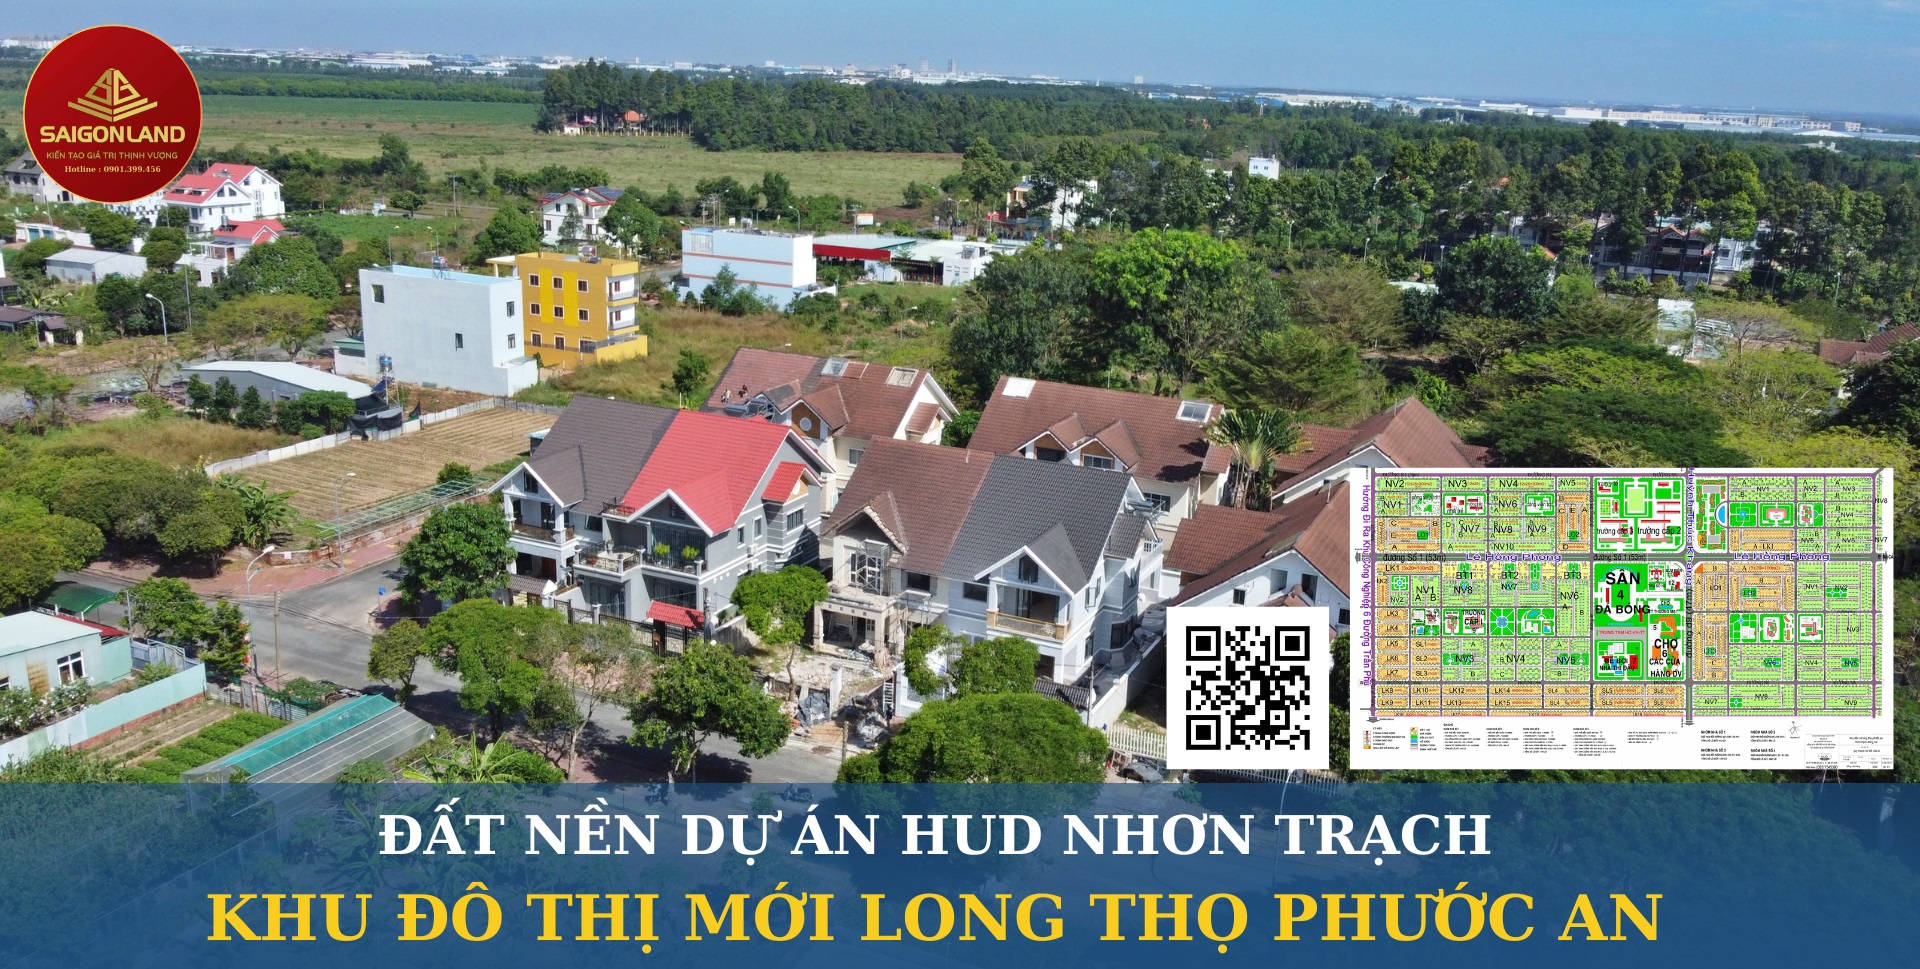 Saigonland Nhơn Trạch - Mua bán Đất nền Đồng Nai - Dự án Hud Nhơn Trạch Giá tốt - Ảnh chính